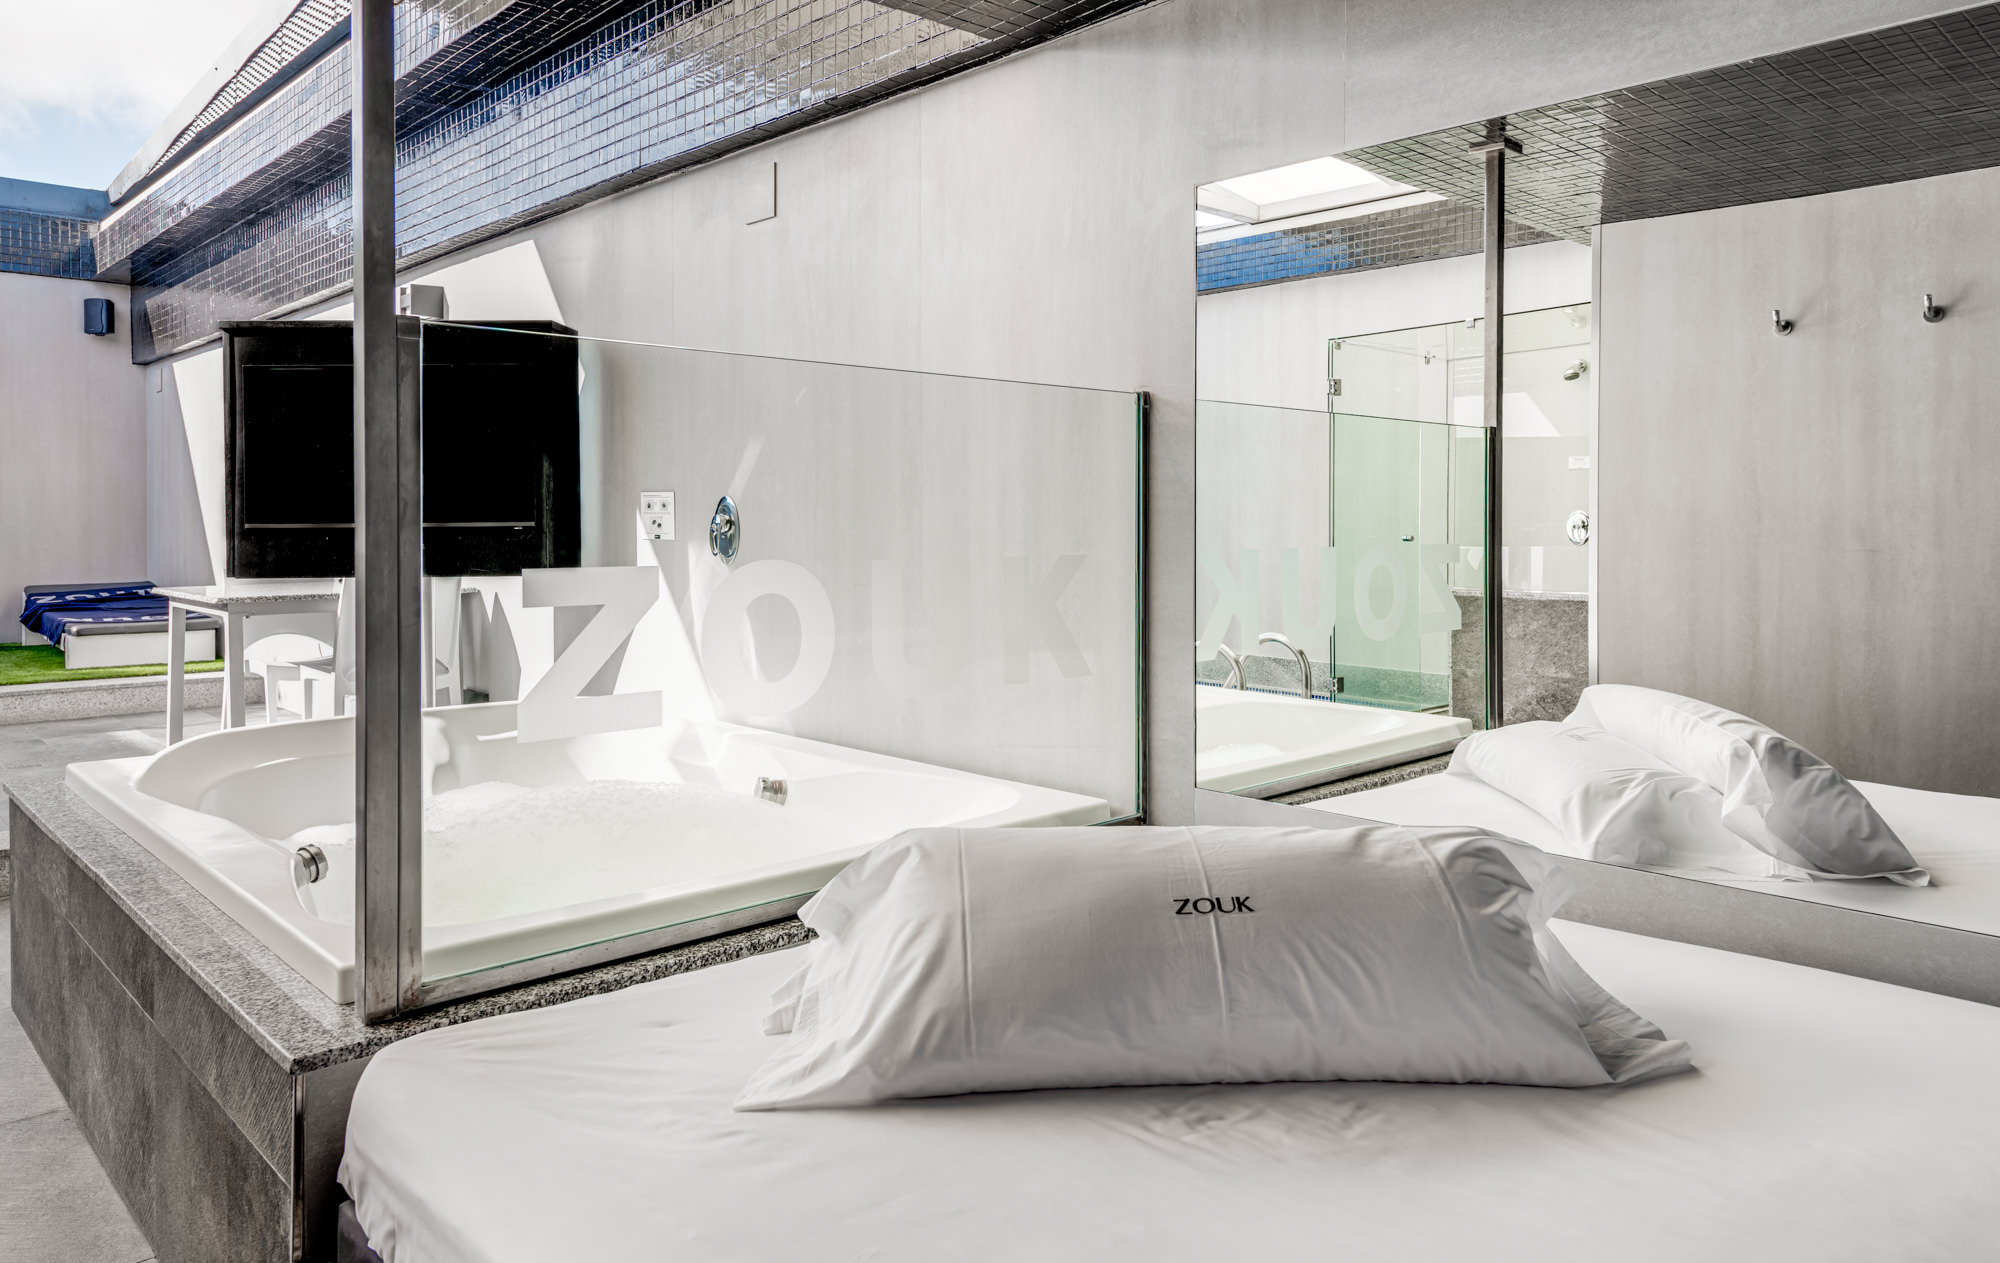 profesor exceso Lubricar Hotel con cama de agua en Madrid | Ofertas en Zouk Hotel